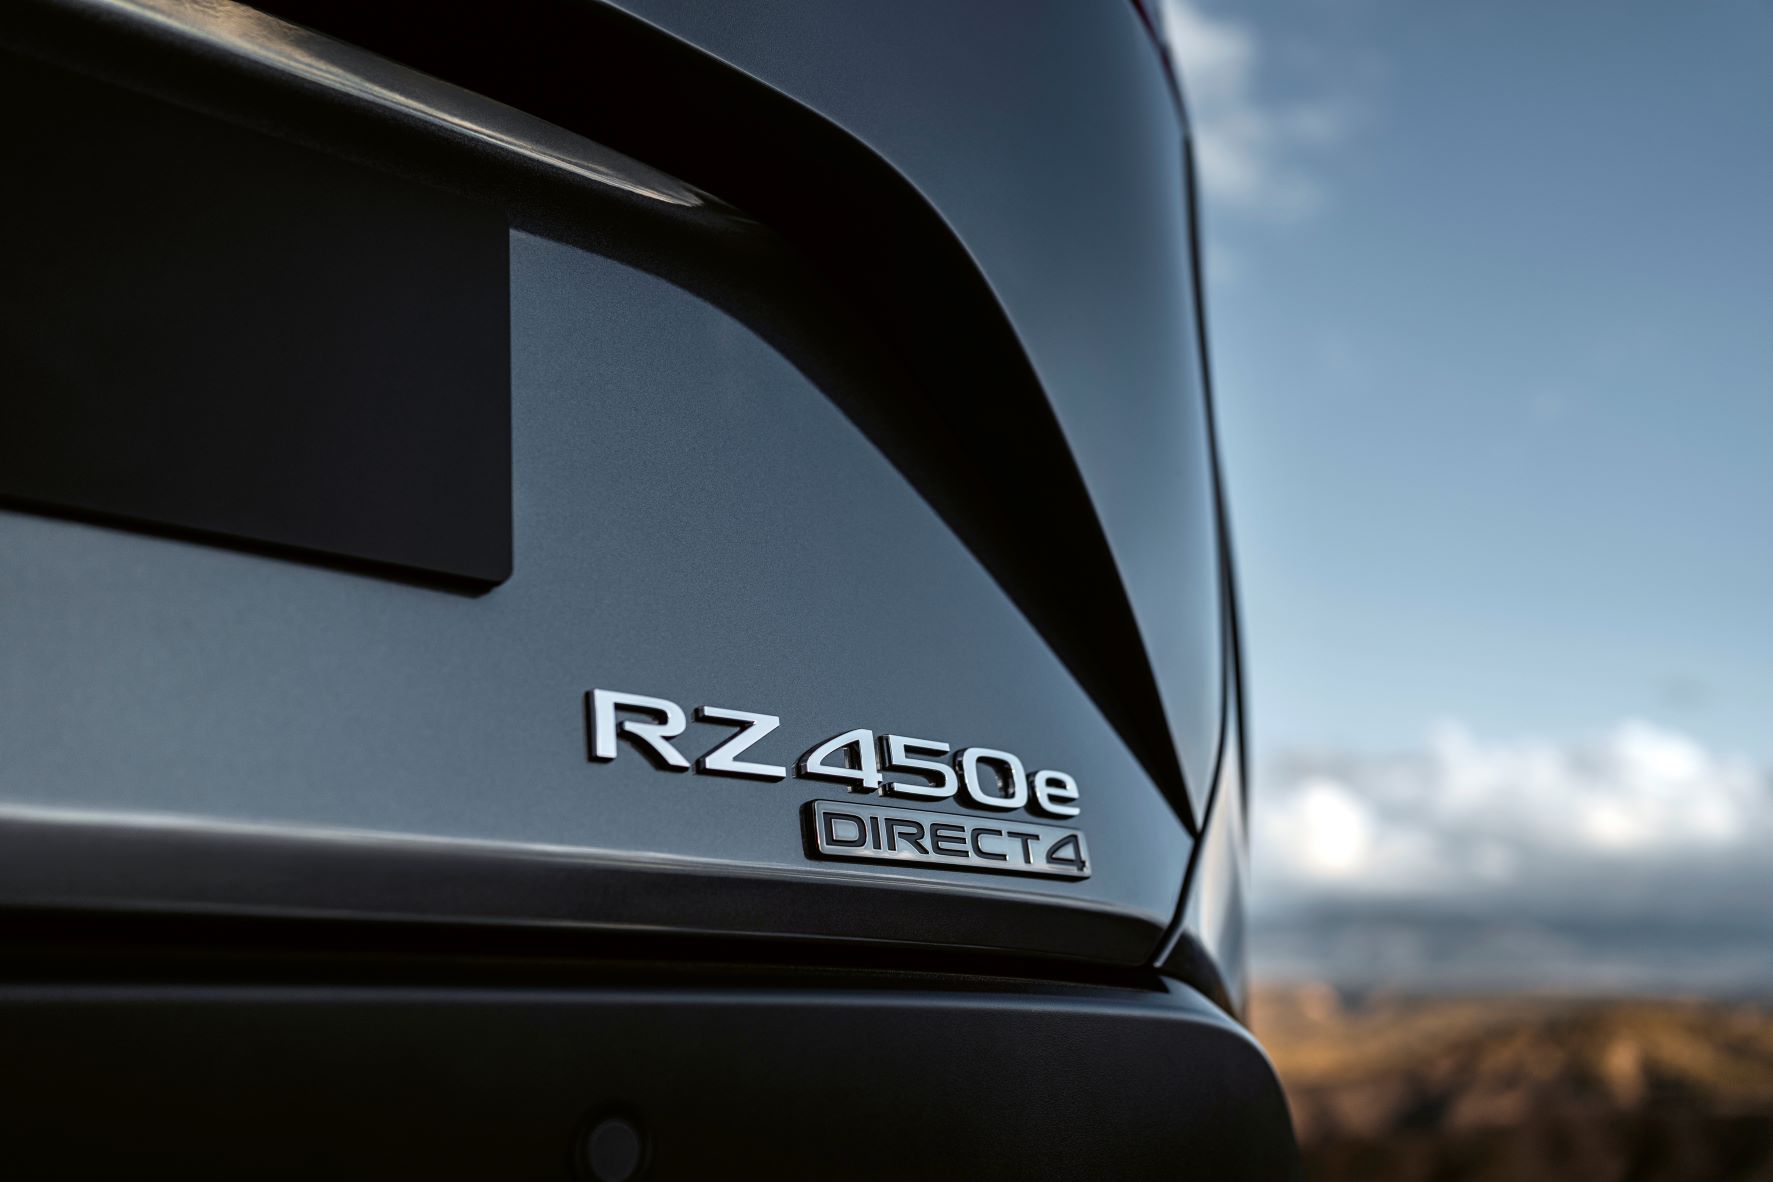 Lexus' RZ450e badge in focus